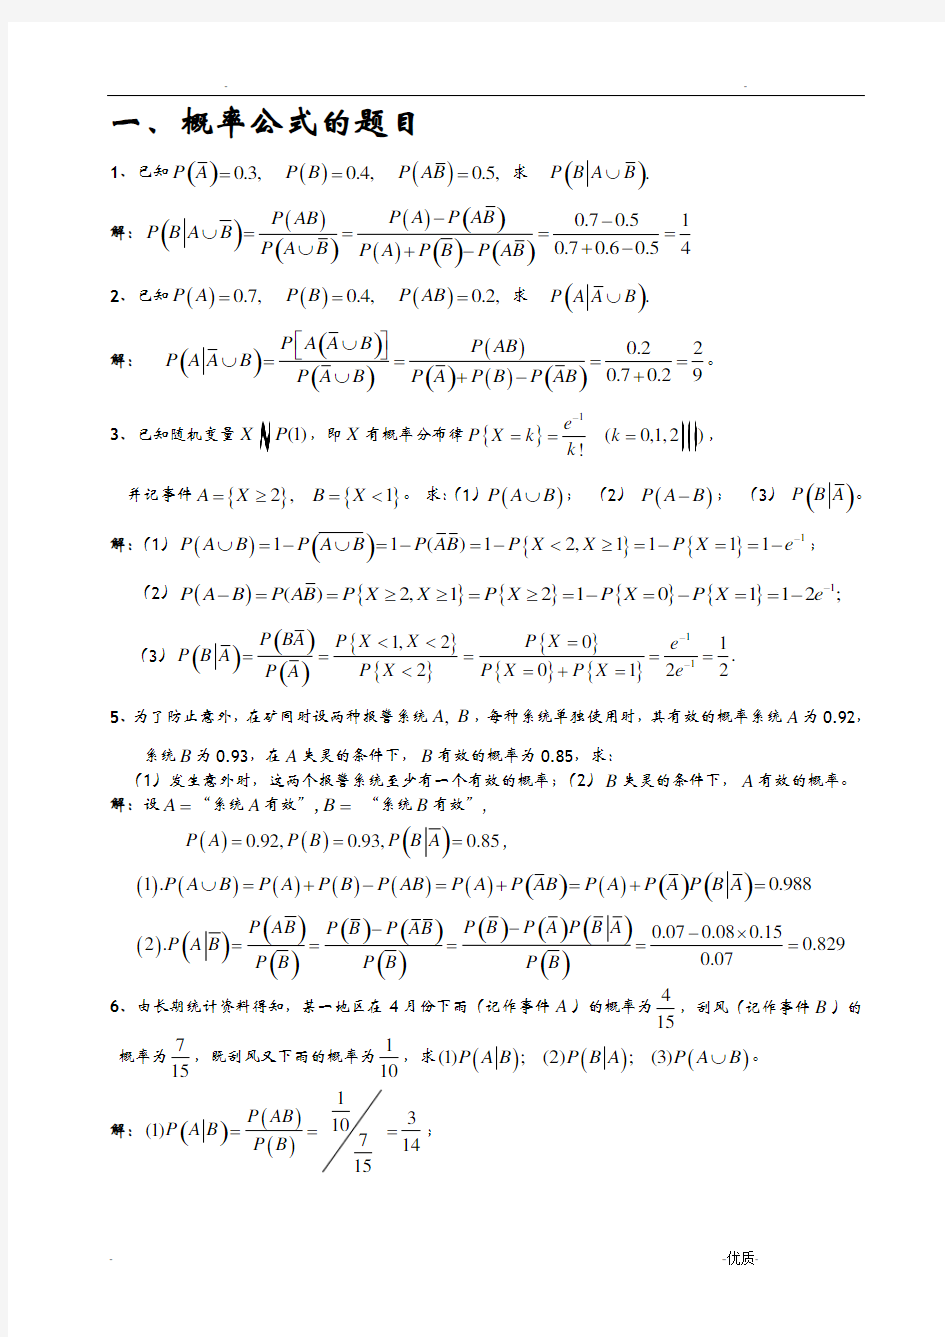 概率论与数理统计C的习题集-计算题